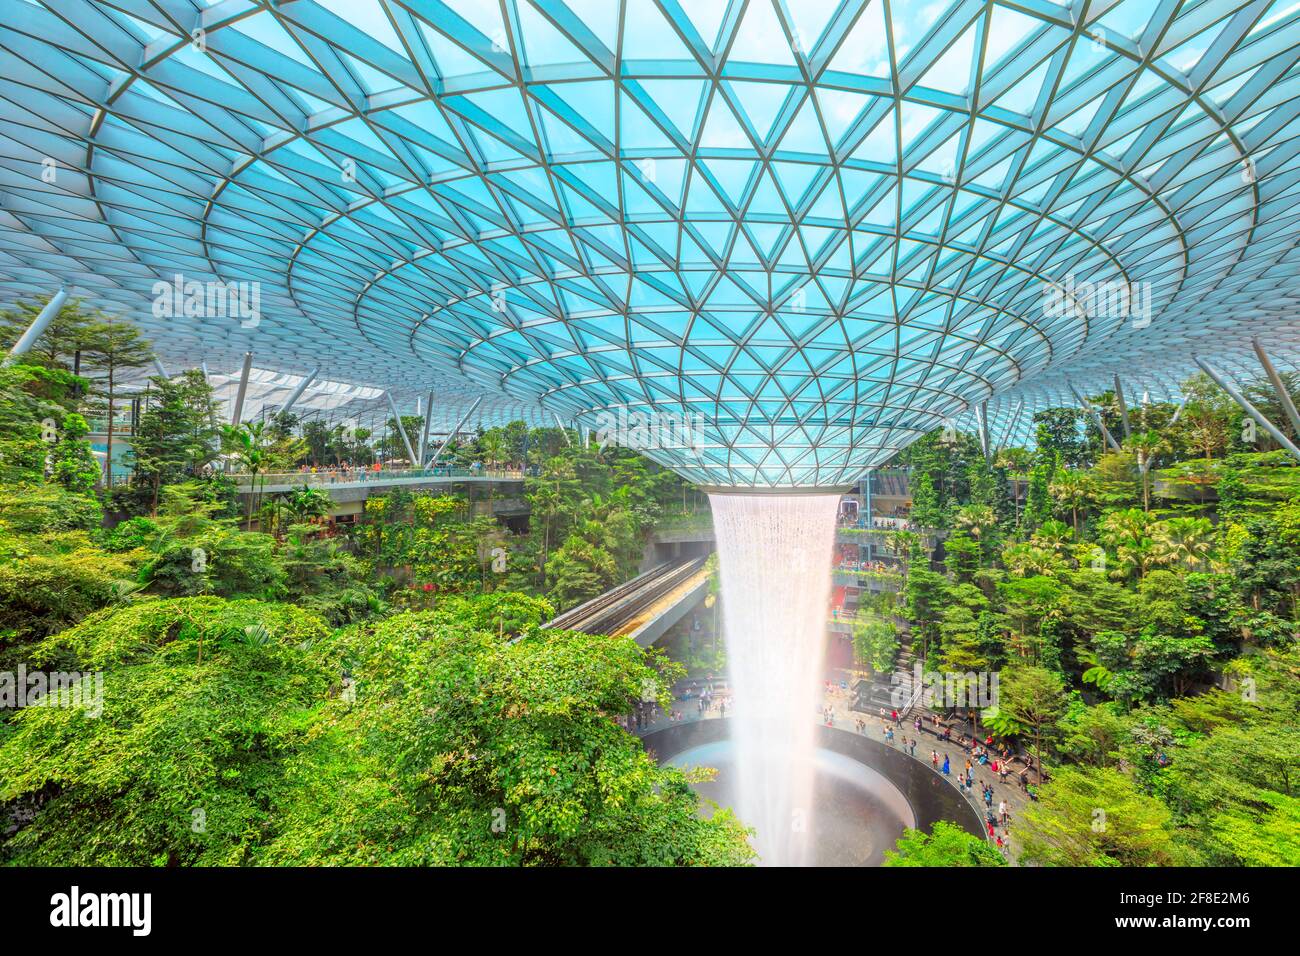 Singapour - 8 août 2019 : vue aérienne de Rain Vortex, la plus grande chute d'eau intérieure du monde entourée d'une forêt mitoyenne de quatre étages et d'un Skytrain Banque D'Images